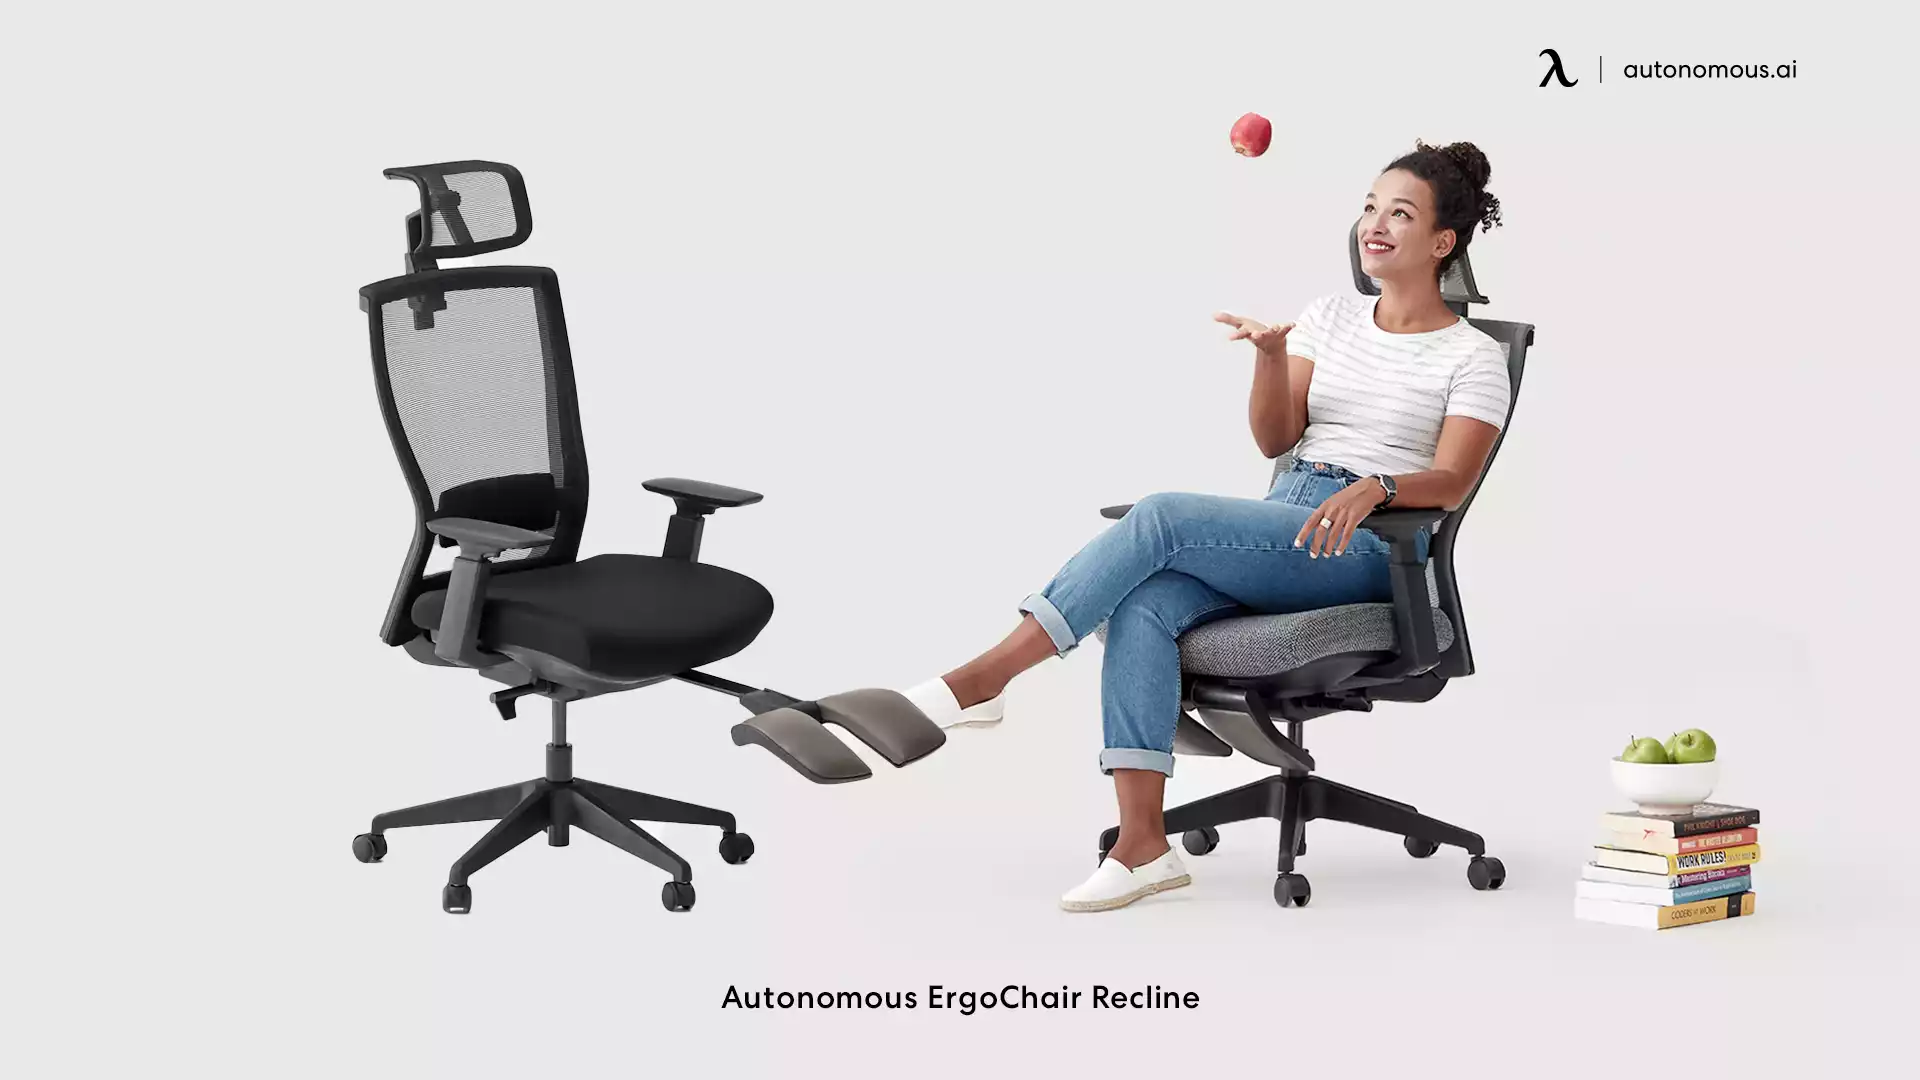 ErgoChair Recline - adjustable chair